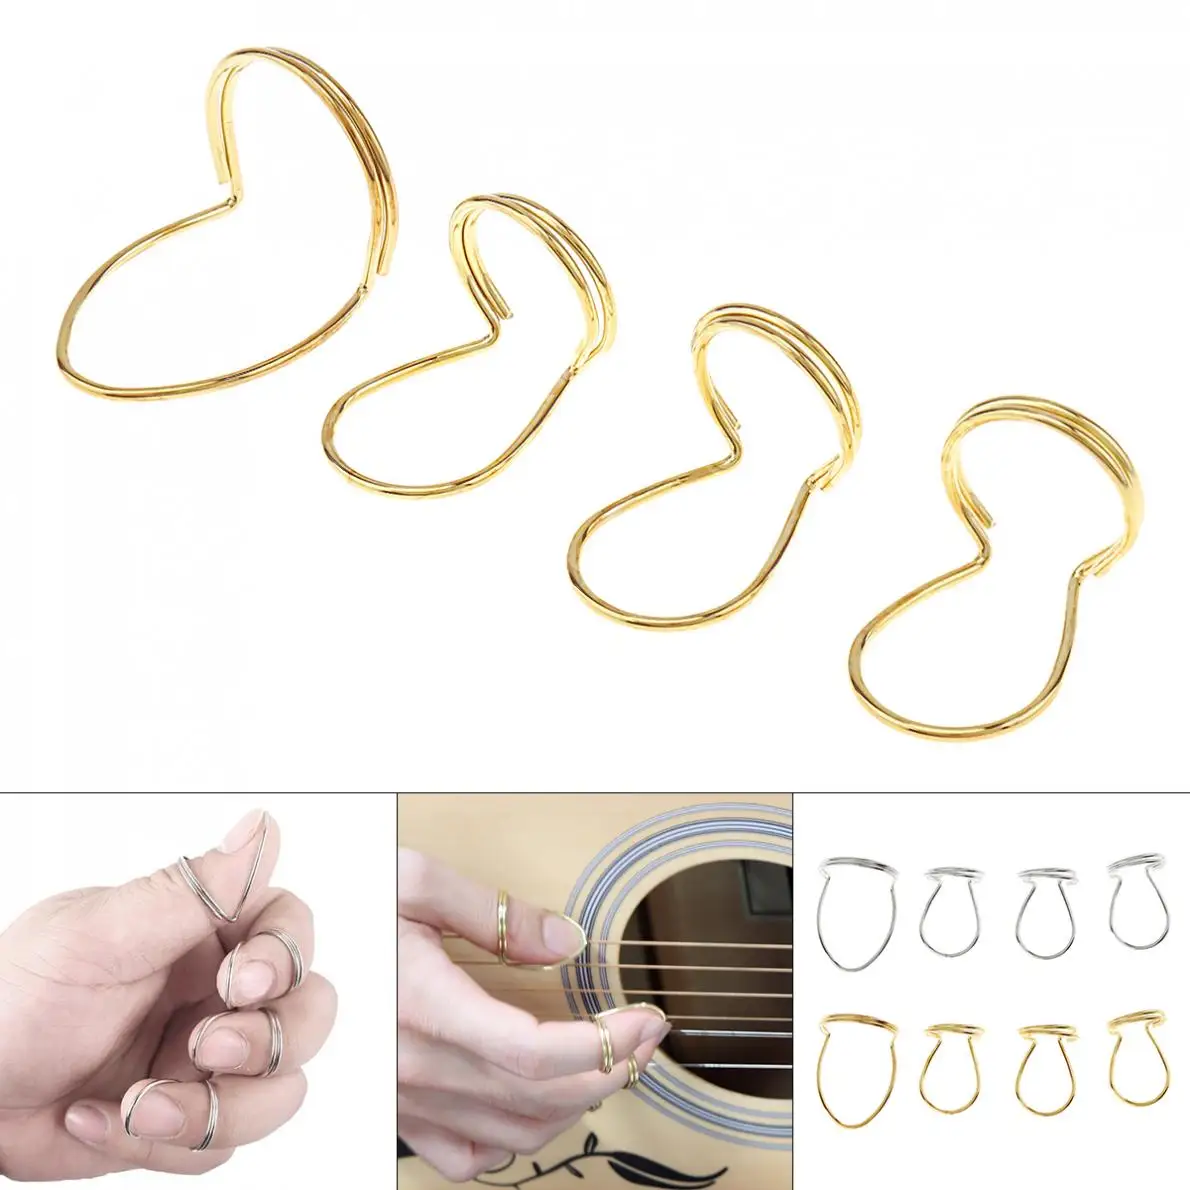 

4 шт медиаторы металлический палец кольцо защиты медиатор с накатанной головкой указательного пальца, лучший выбор для гитары бас-гитара из...